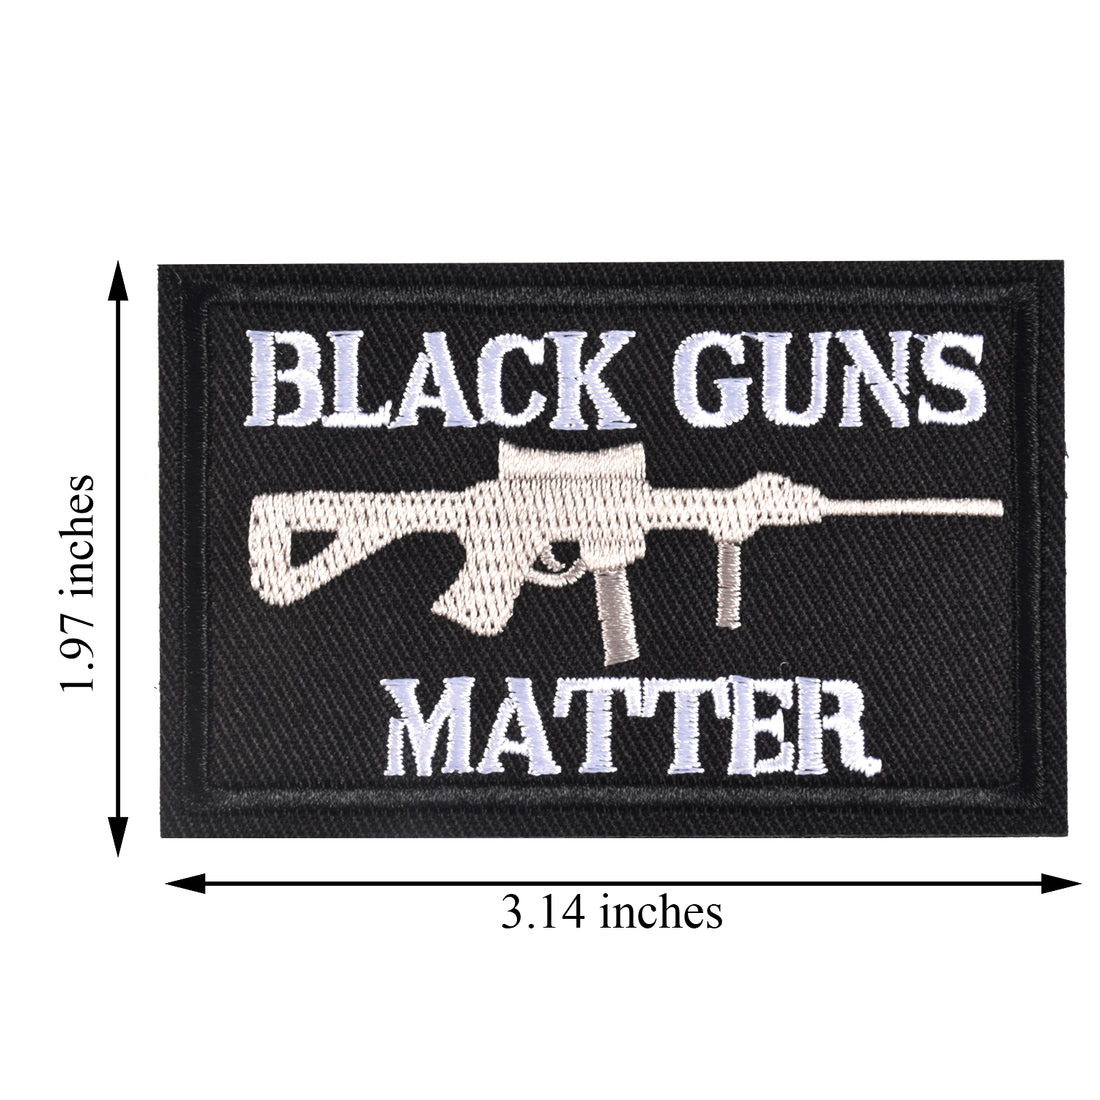 Black Guns Matter - 2x3 Decorative Morale Patch (Multicam with Spice), Black